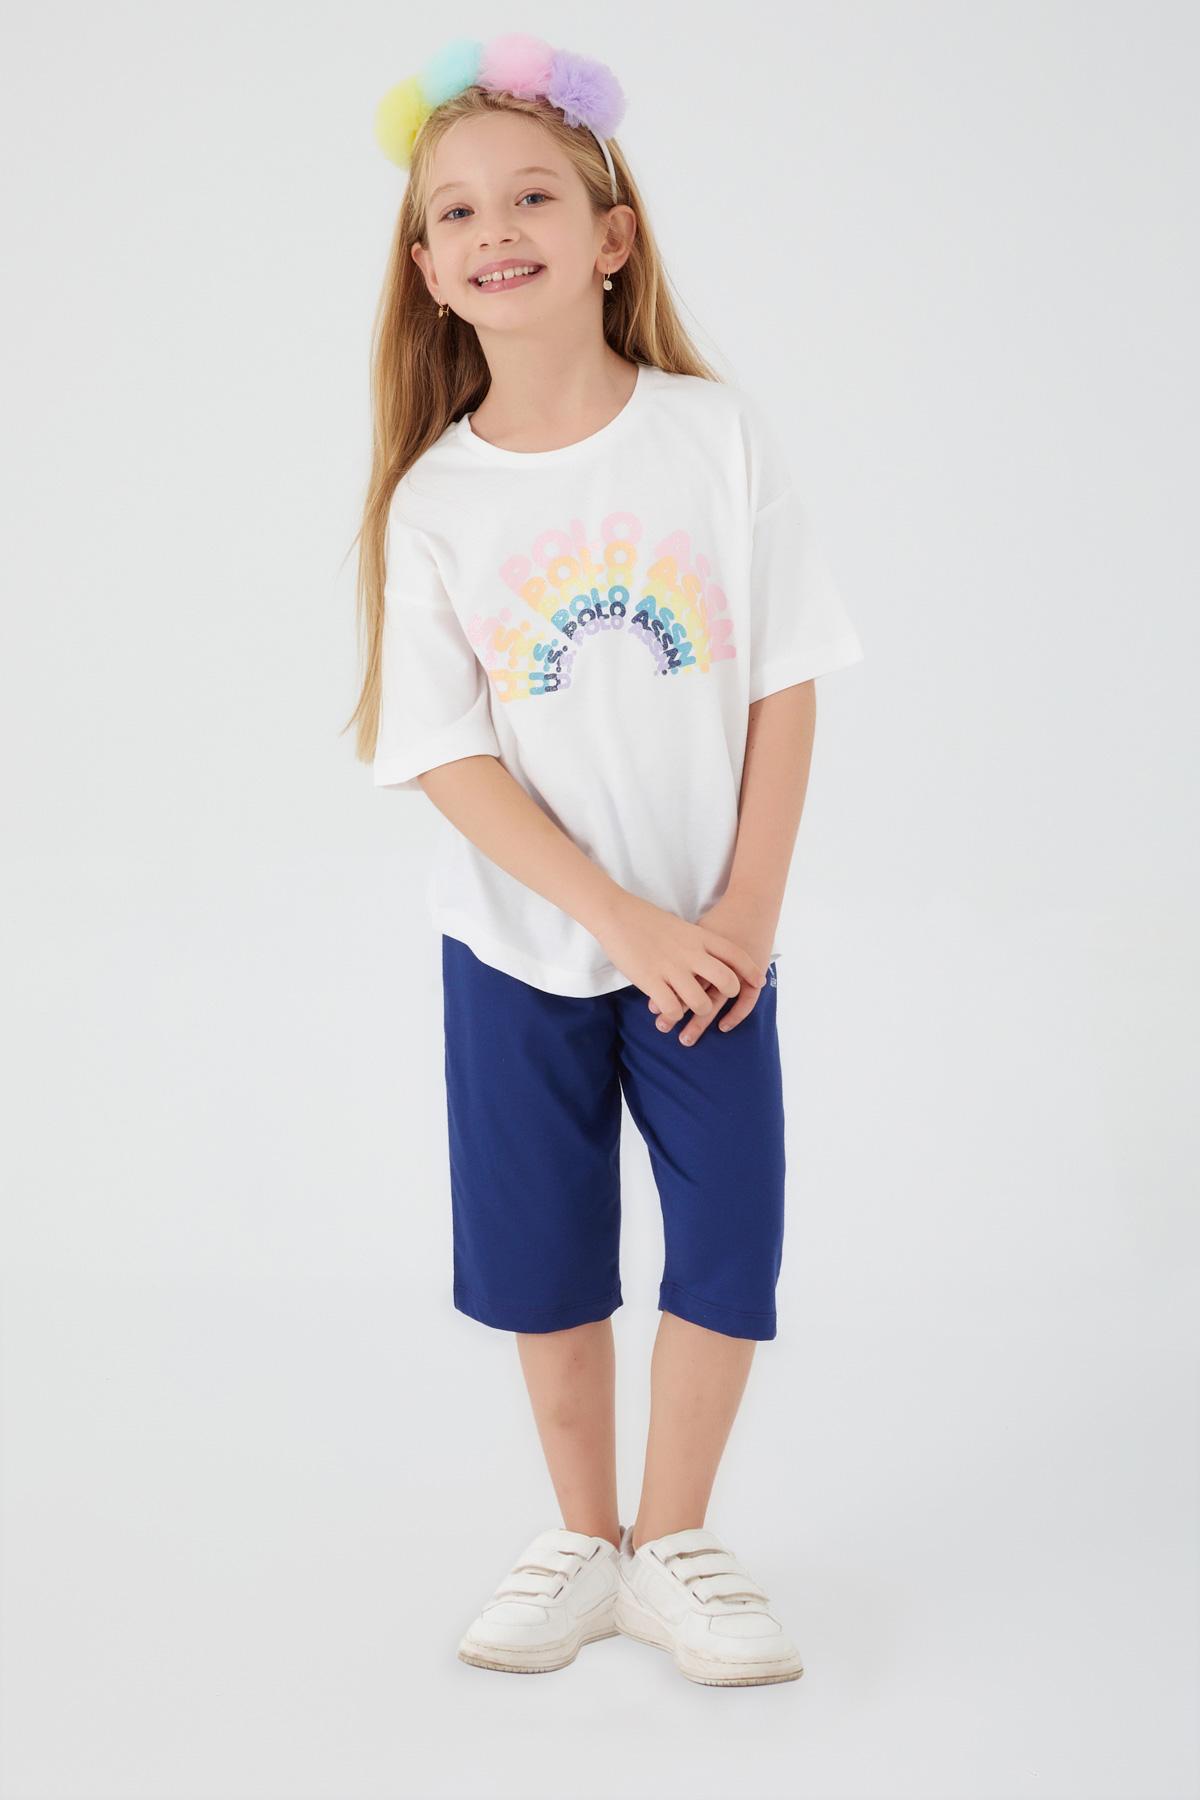 Selected image for U.S. POLO ASSN. Komplet šorc i majica za devojčice US1404-4